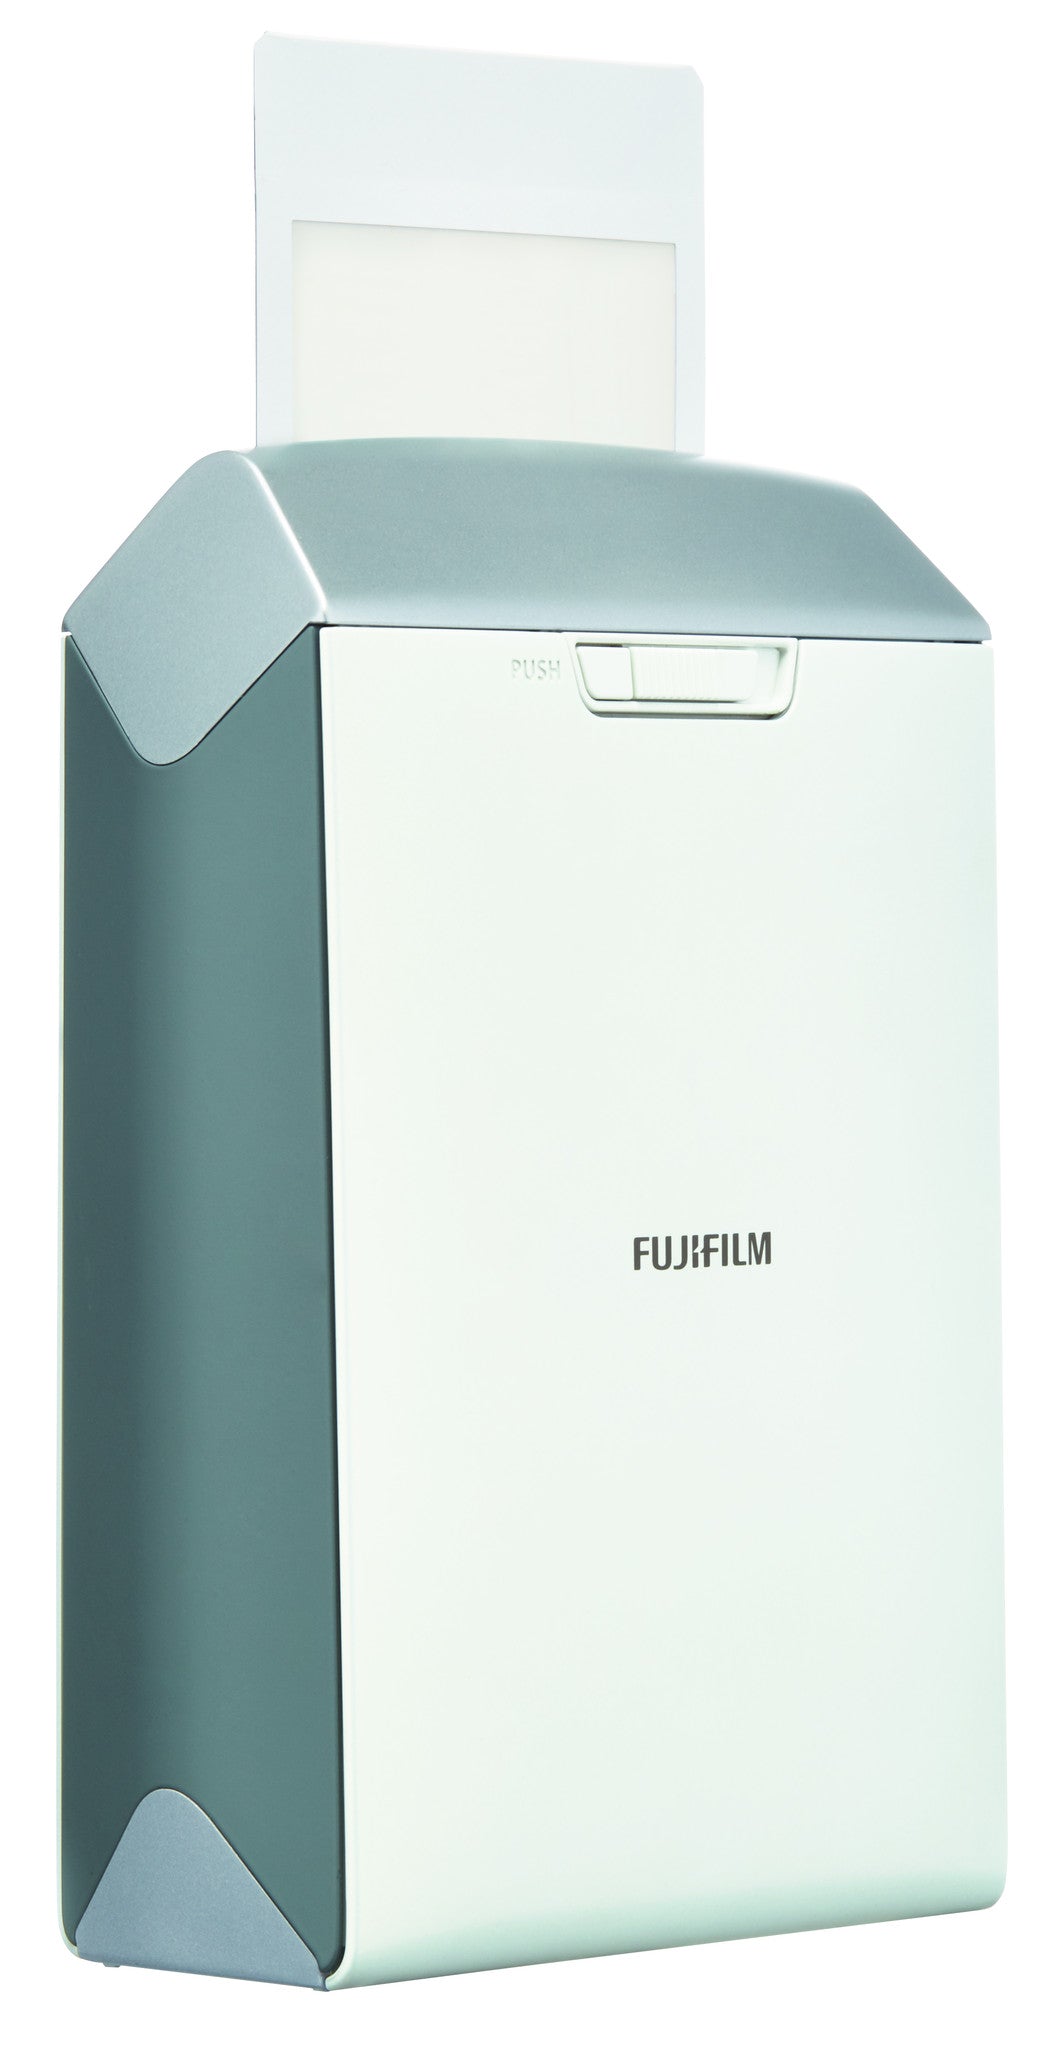 Fujifilm INSTAX Share Smartphone Printer SP-2 Silver, printers small format, Fujifilm - Pictureline  - 4